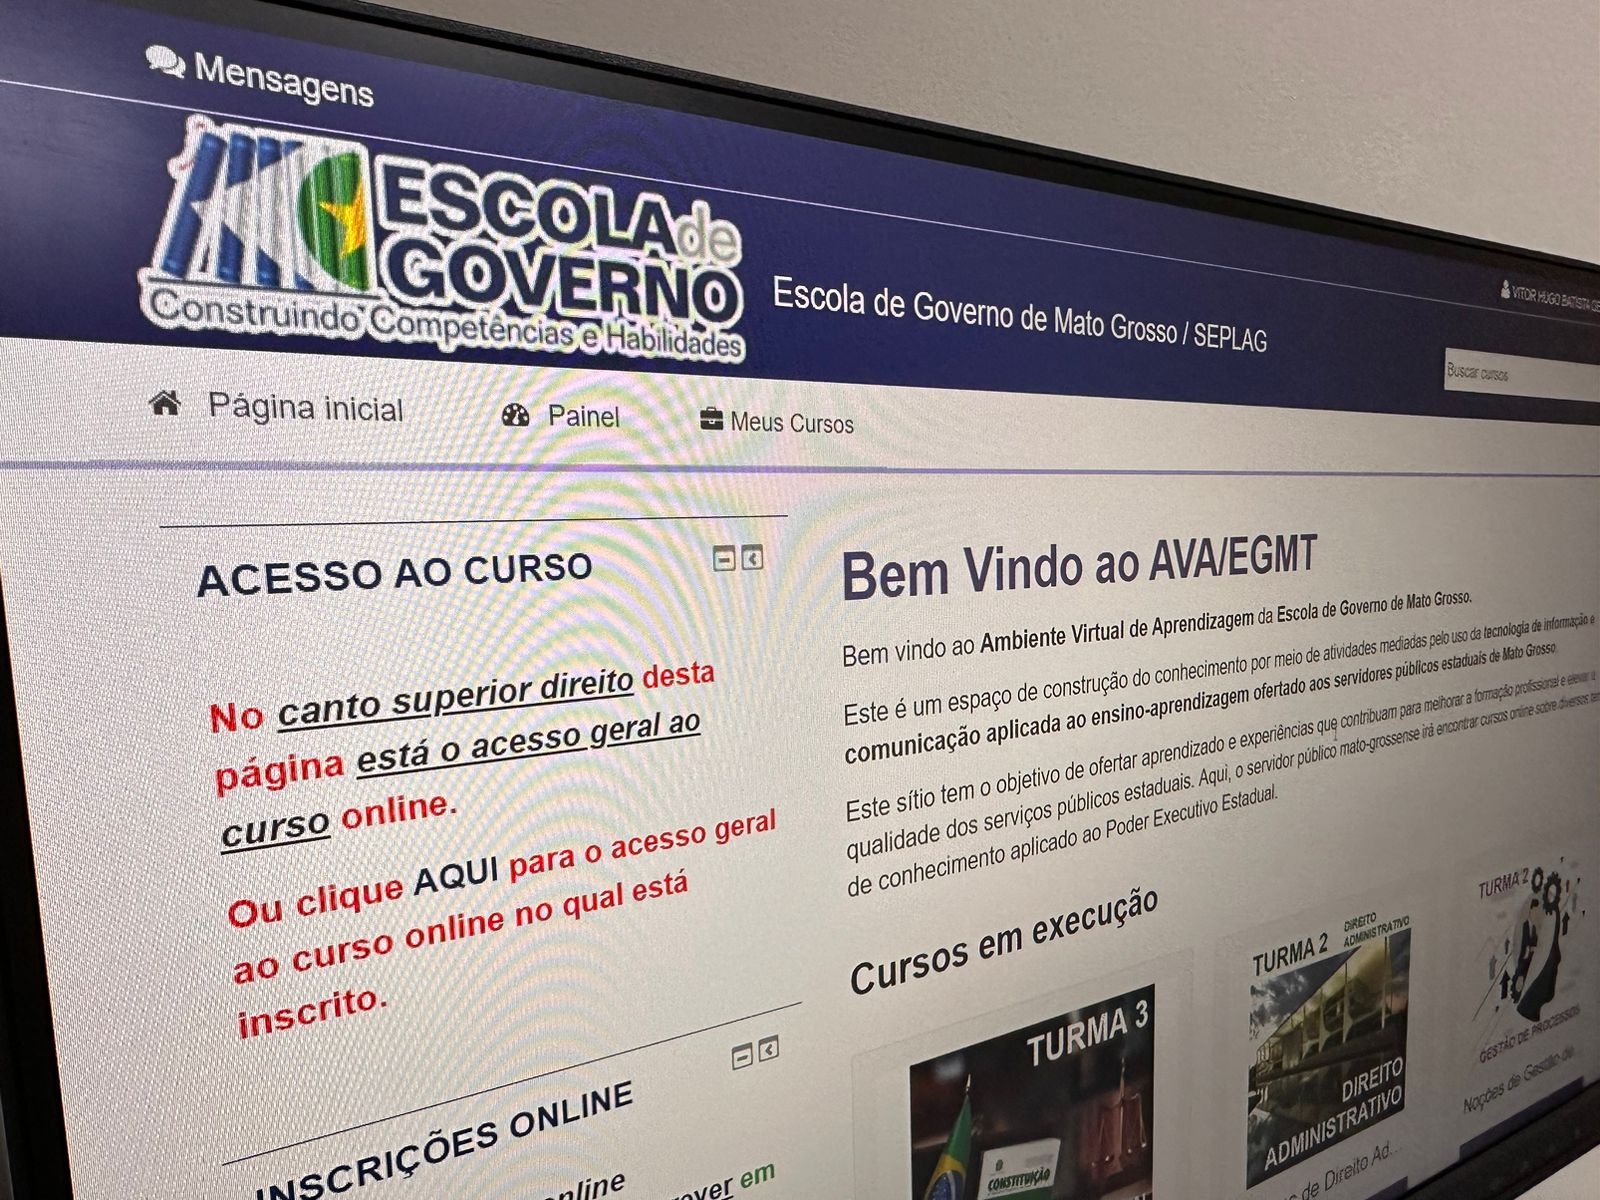 Abertas as inscrições para curso sobre Formação e Reforma do Estado Brasileiro